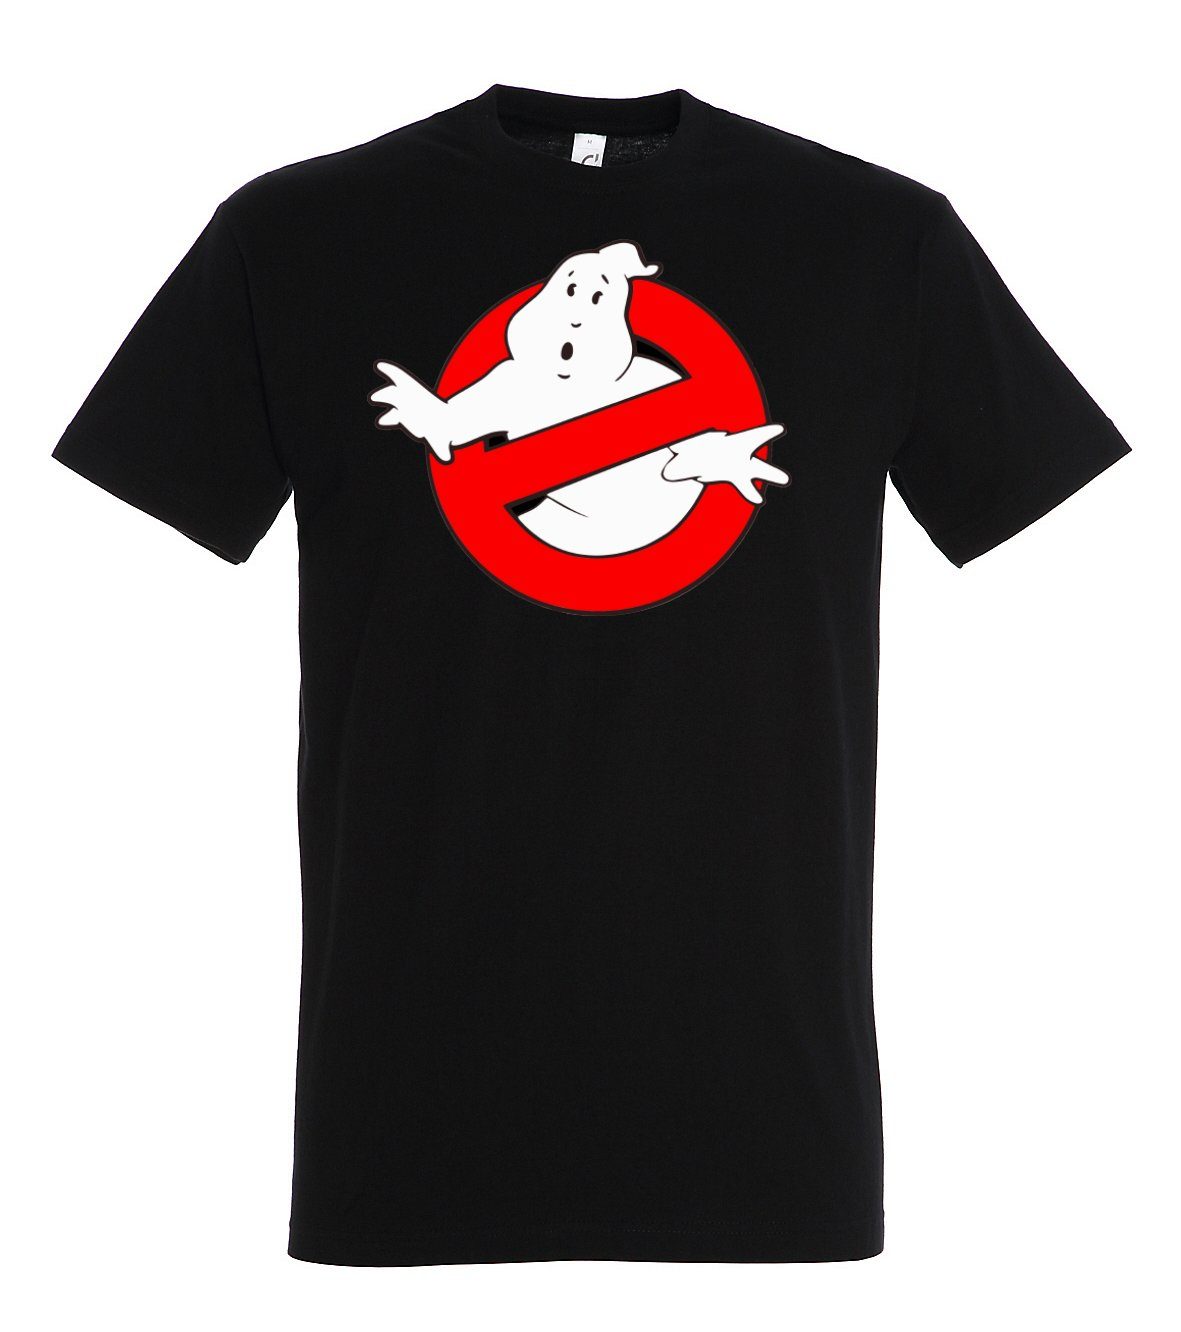 Youth Designz T-Shirt Ghostbusters coolen T-Shirt mit Herren Schwarz Frontprint